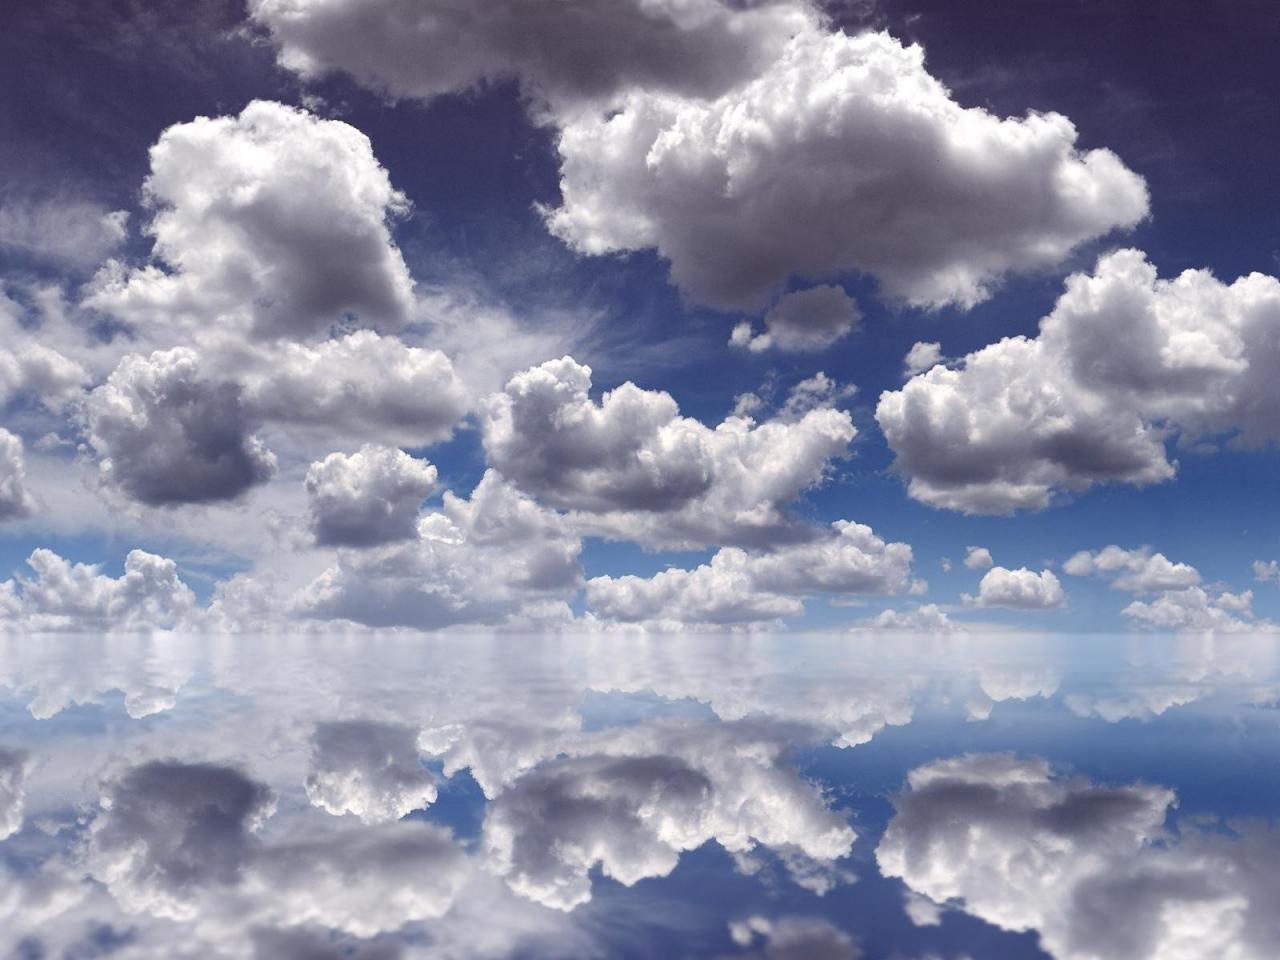 обои Облака отражаються в воде фото